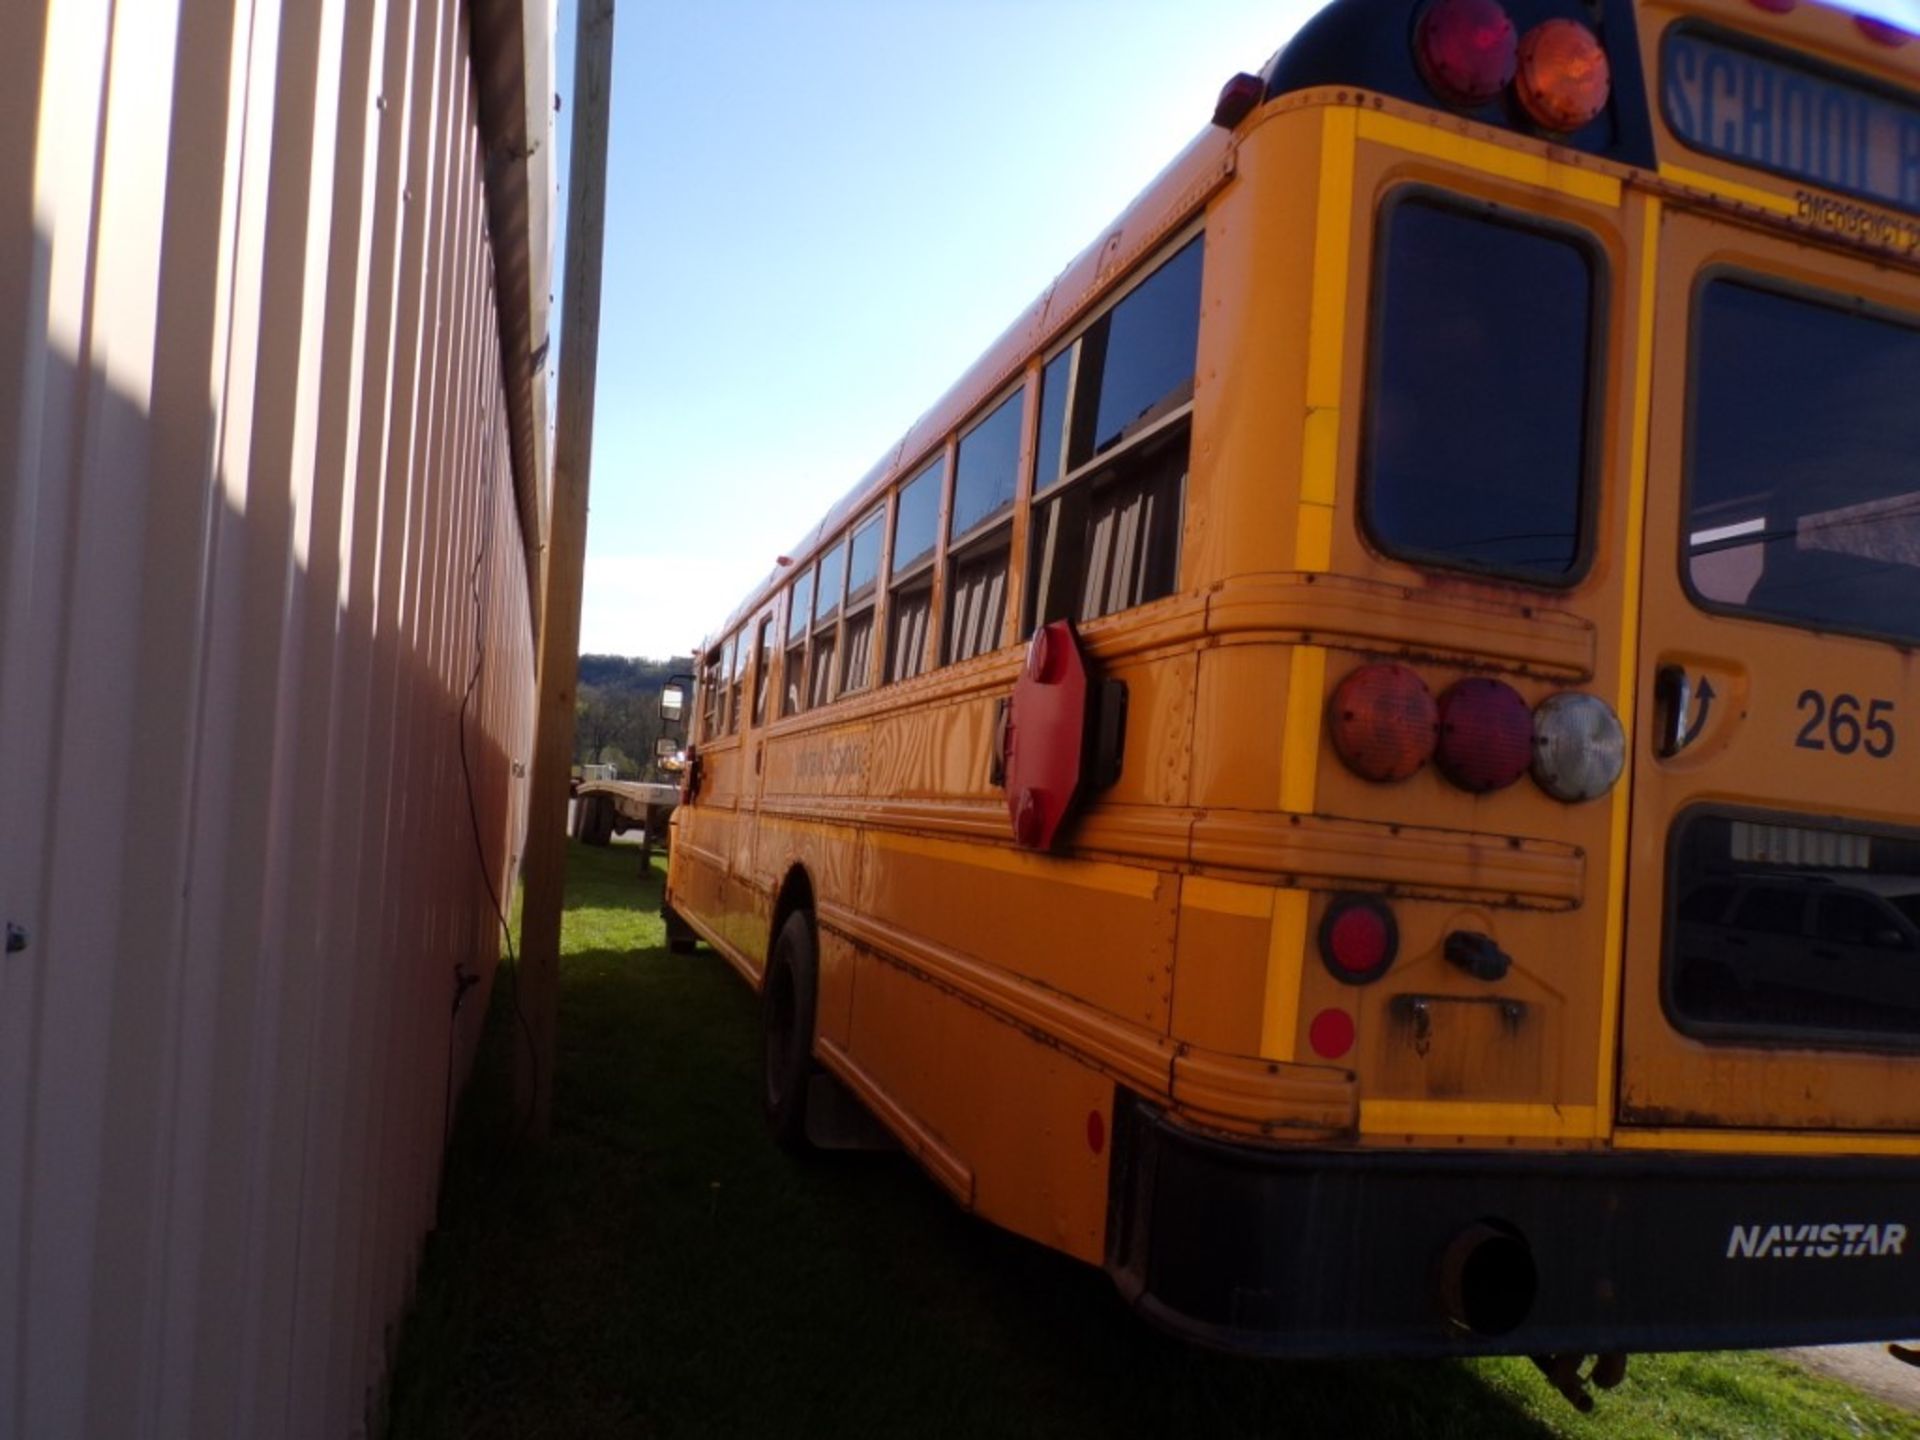 2014 International 66 Seat School Bus, Maxx Force Diesel, 165,315 Miles, # 265, Vin # - Image 5 of 7